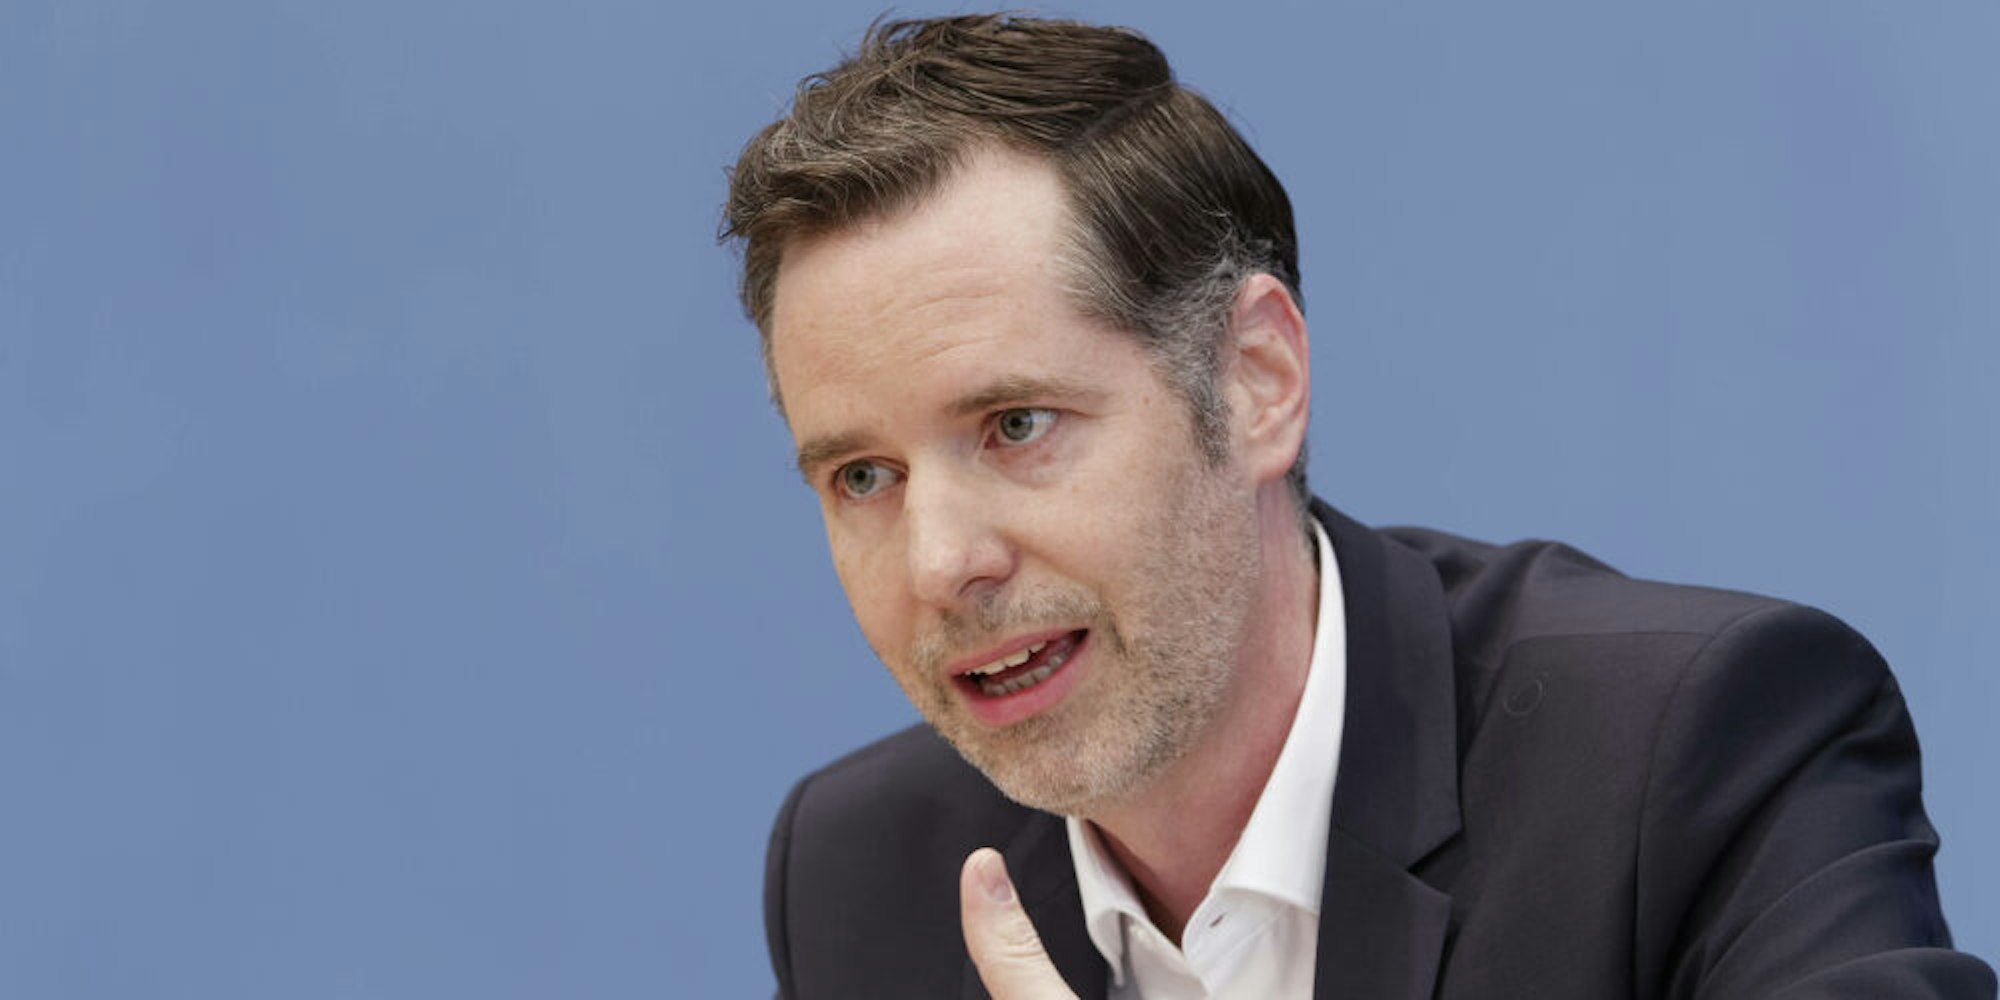 FDP-Fraktionschef Christian Dürr.